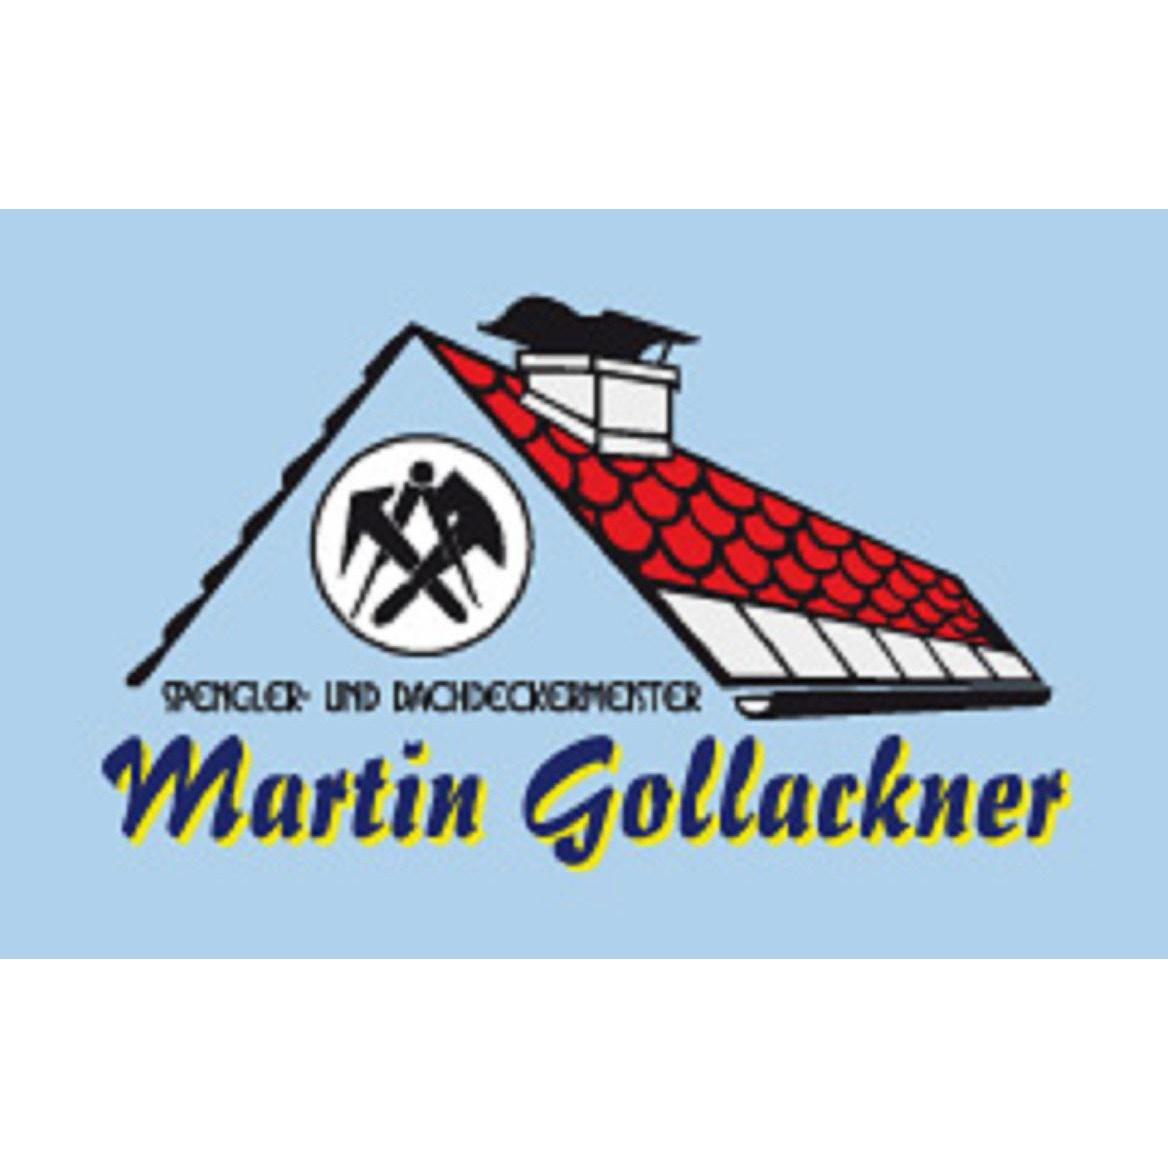 Gollackner Martin - Spengler- u Dachdeckermeister 5301 Eugendorf Logo